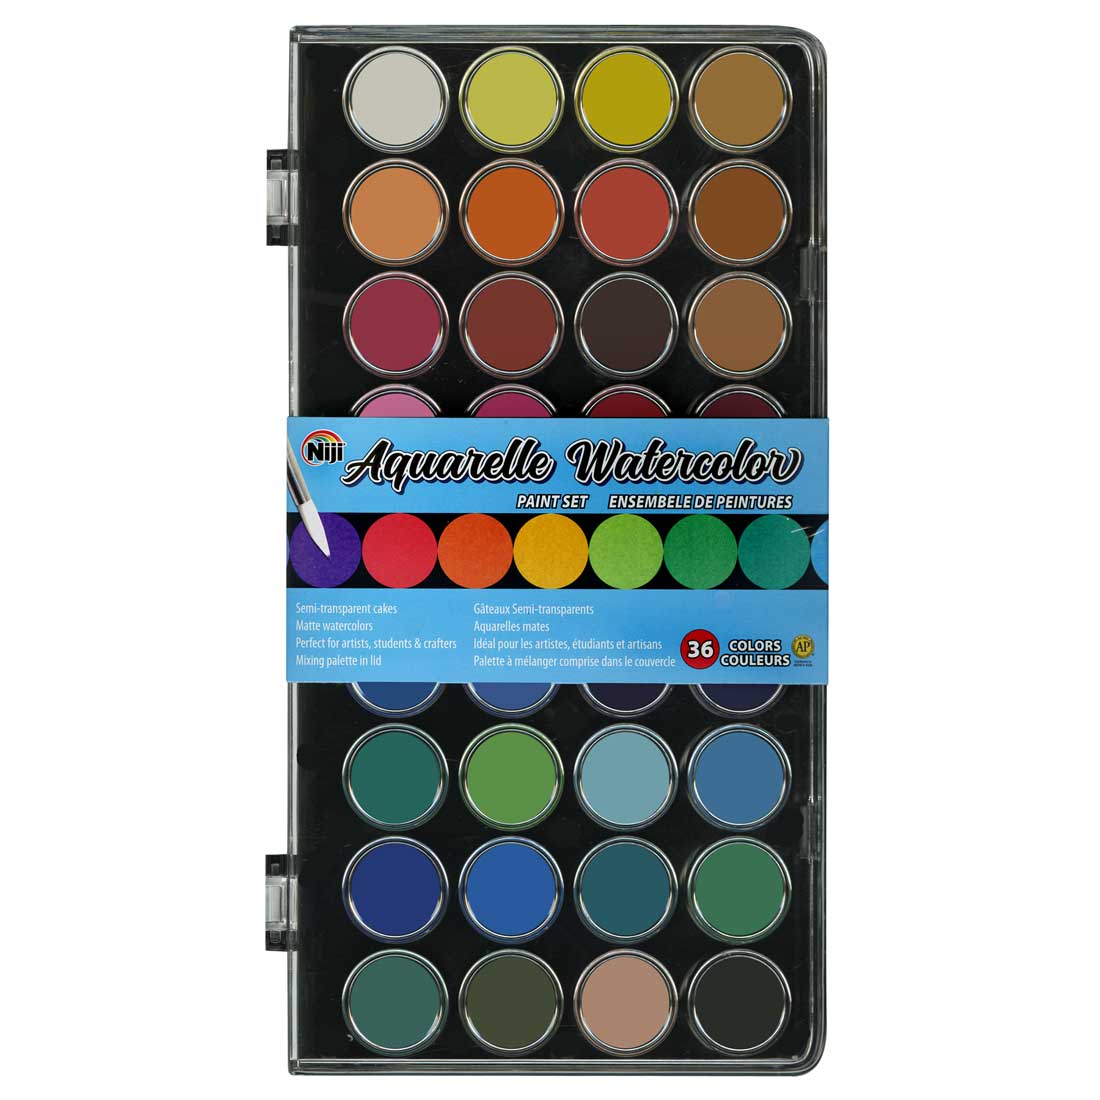 Niji Aquarelle Watercolor Pan Set with 36 colors